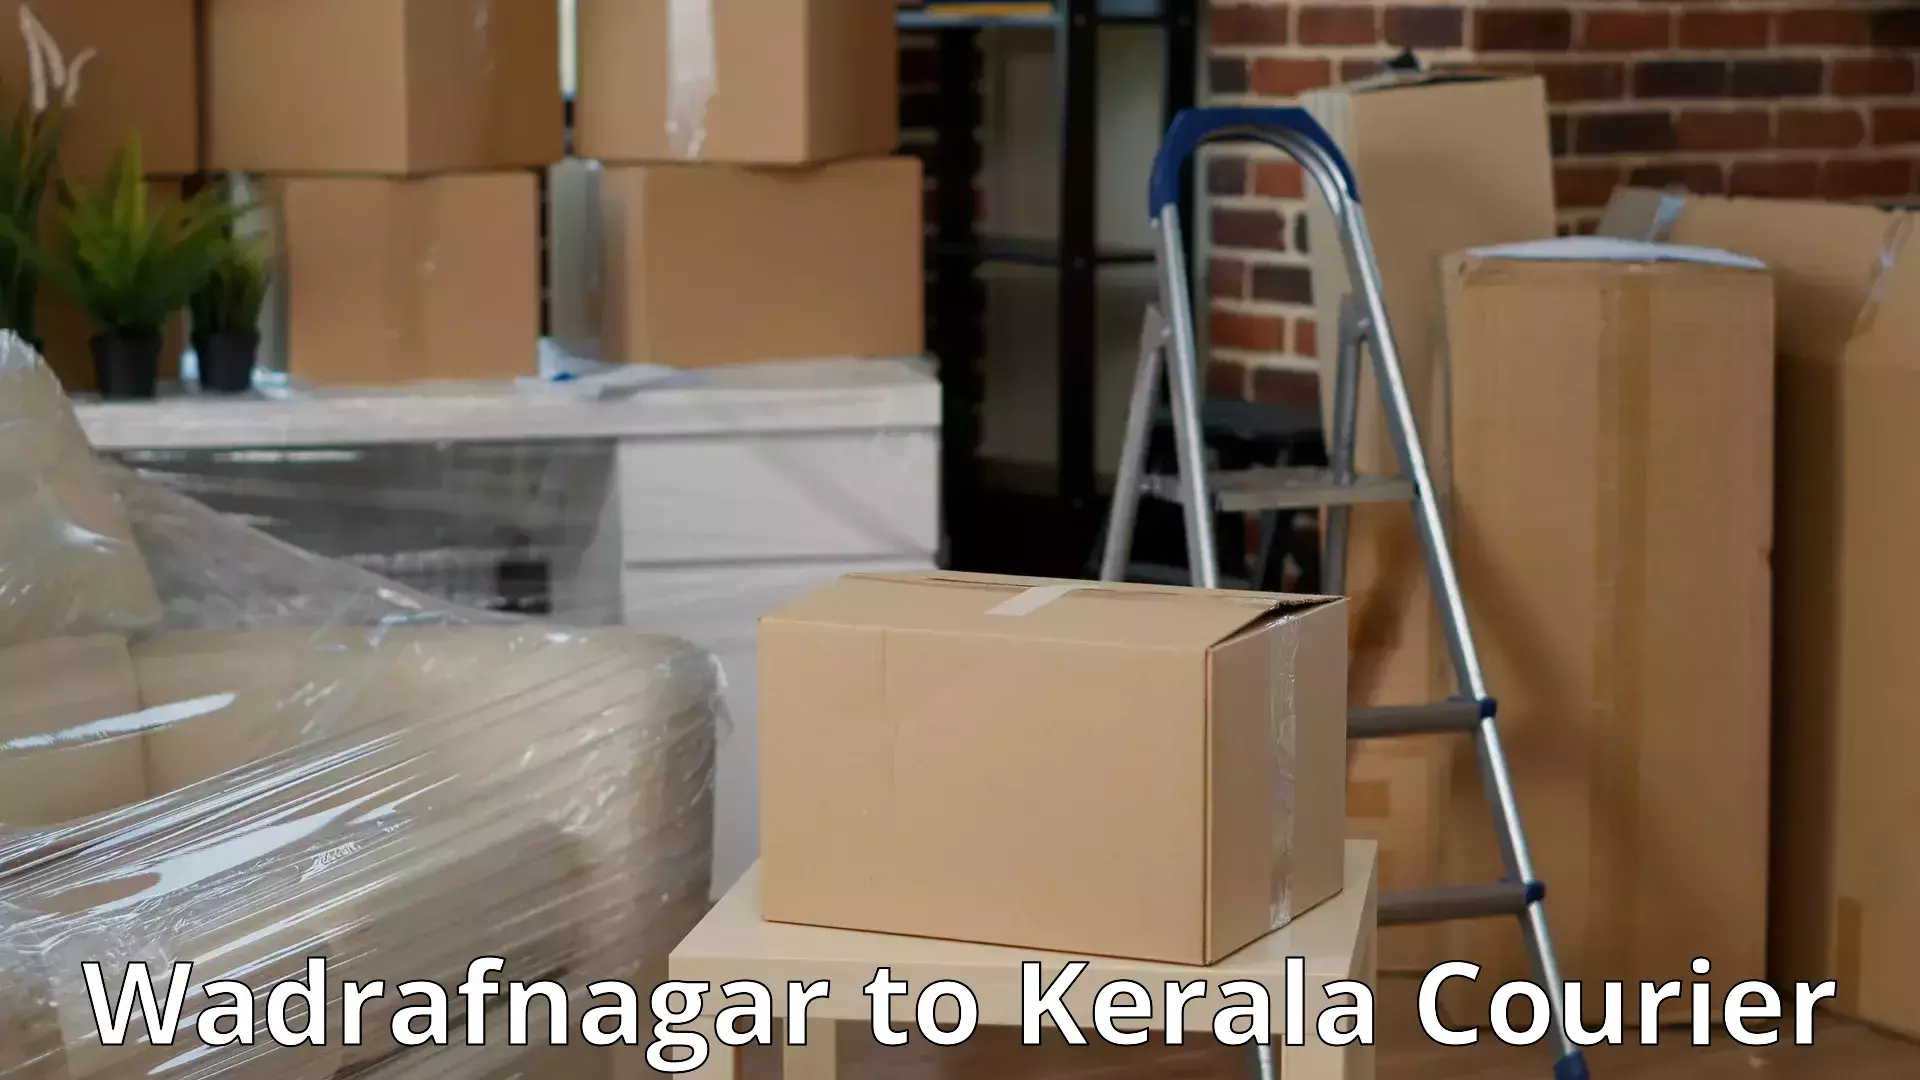 Efficient packing services Wadrafnagar to Guruvayur